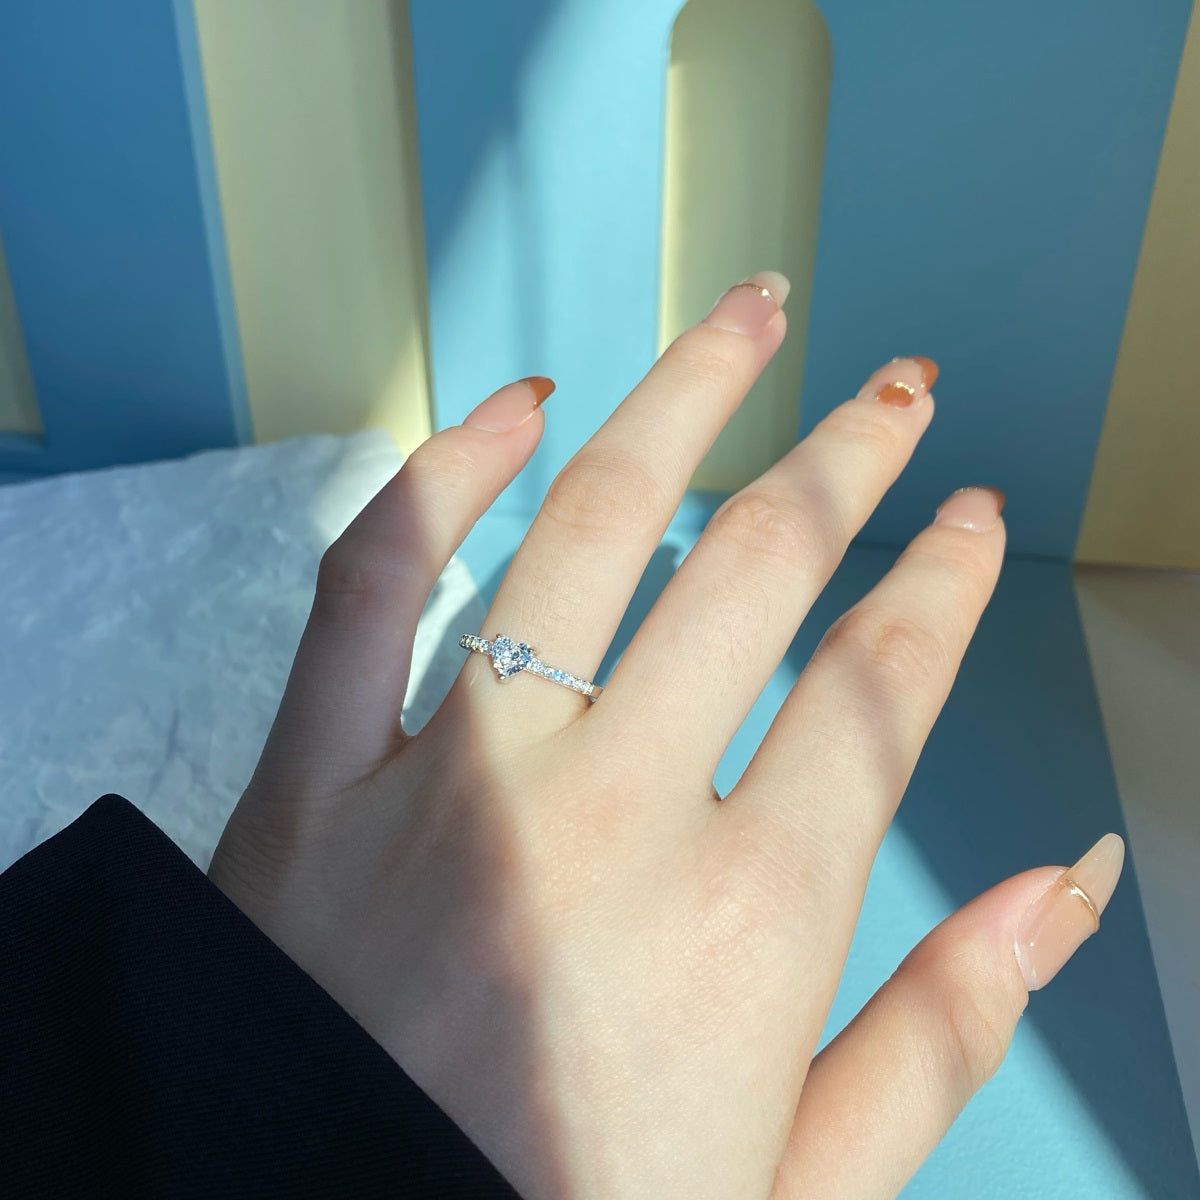 Einzigartiges Geschenk für Frauen kreative Verlobungsring mit Diamanten - Arabisco